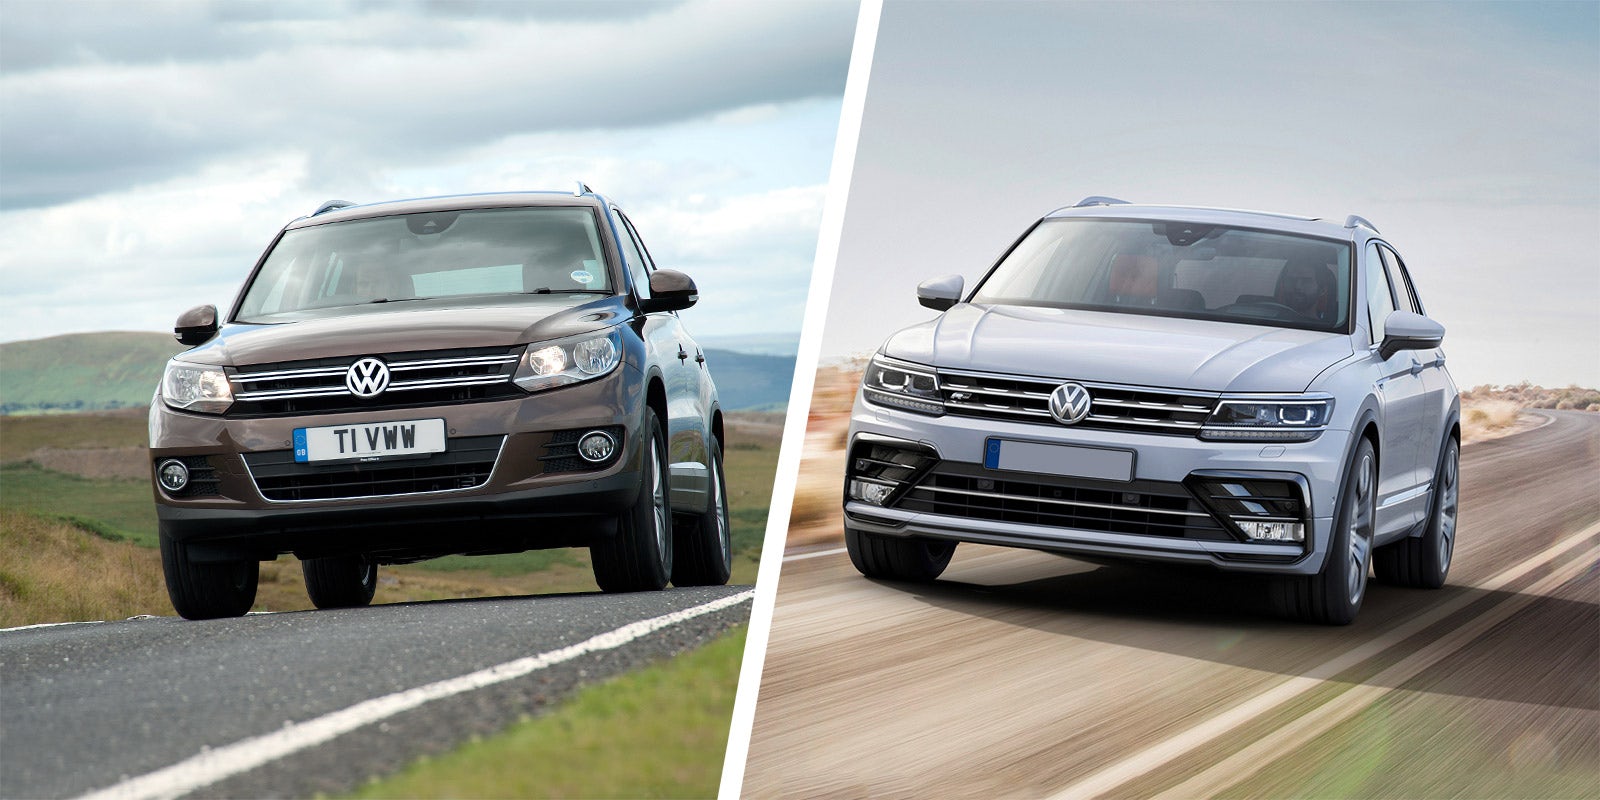 Volkswagen Tiguan History; its Generations, Models & More